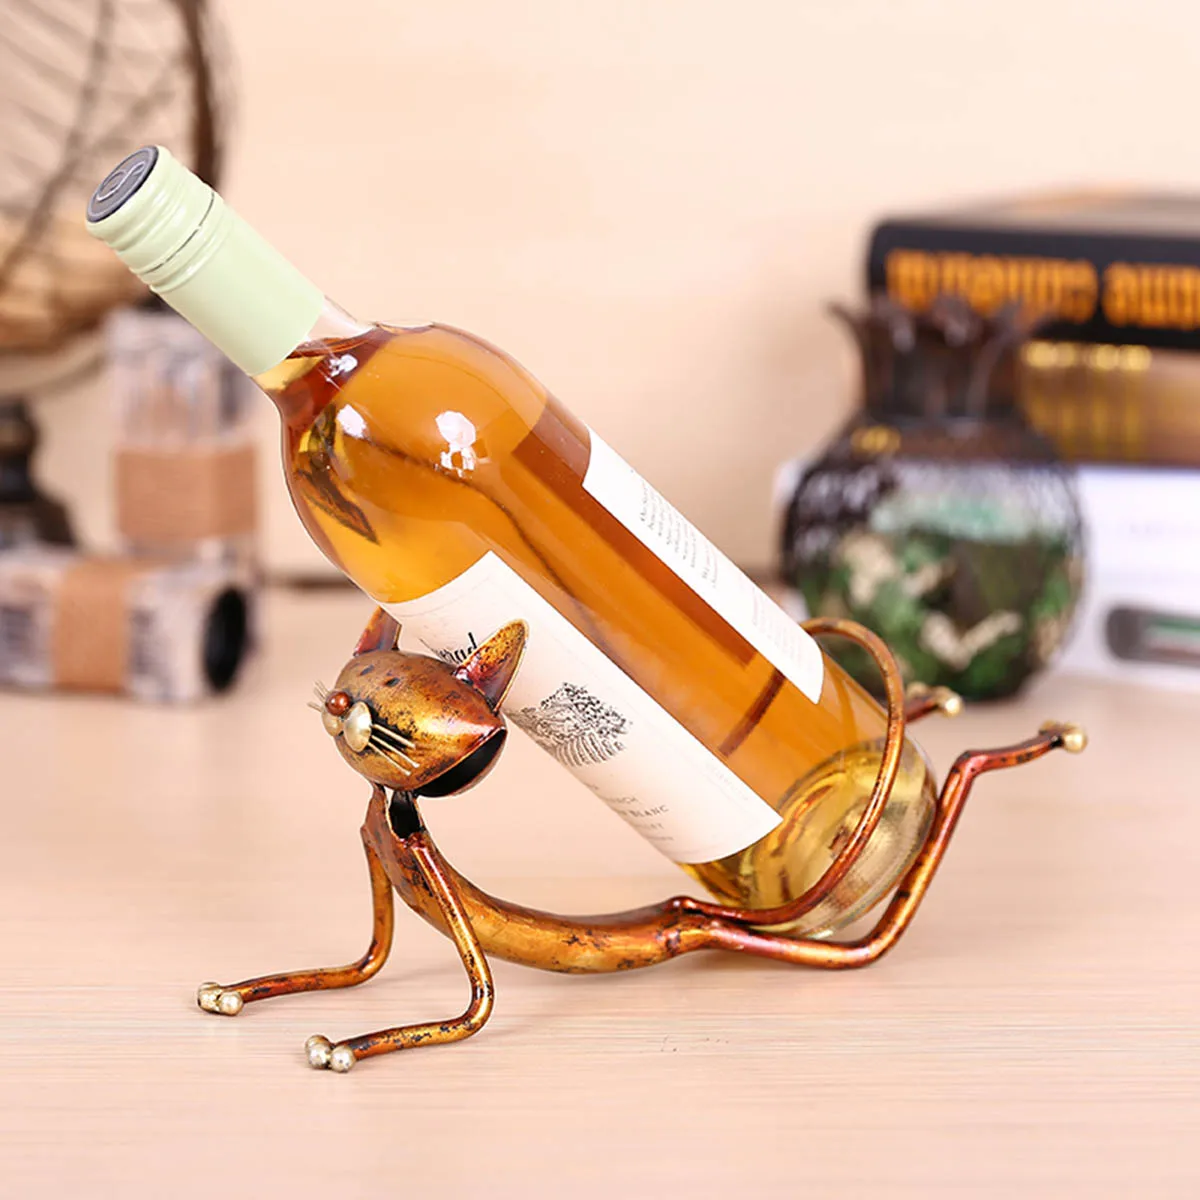 Tooarts Йога Кот винный держатель металлическая фигурка модерн животное ремесло 3D искусство подарок винный шкаф для офиса украшение дома аксессуары